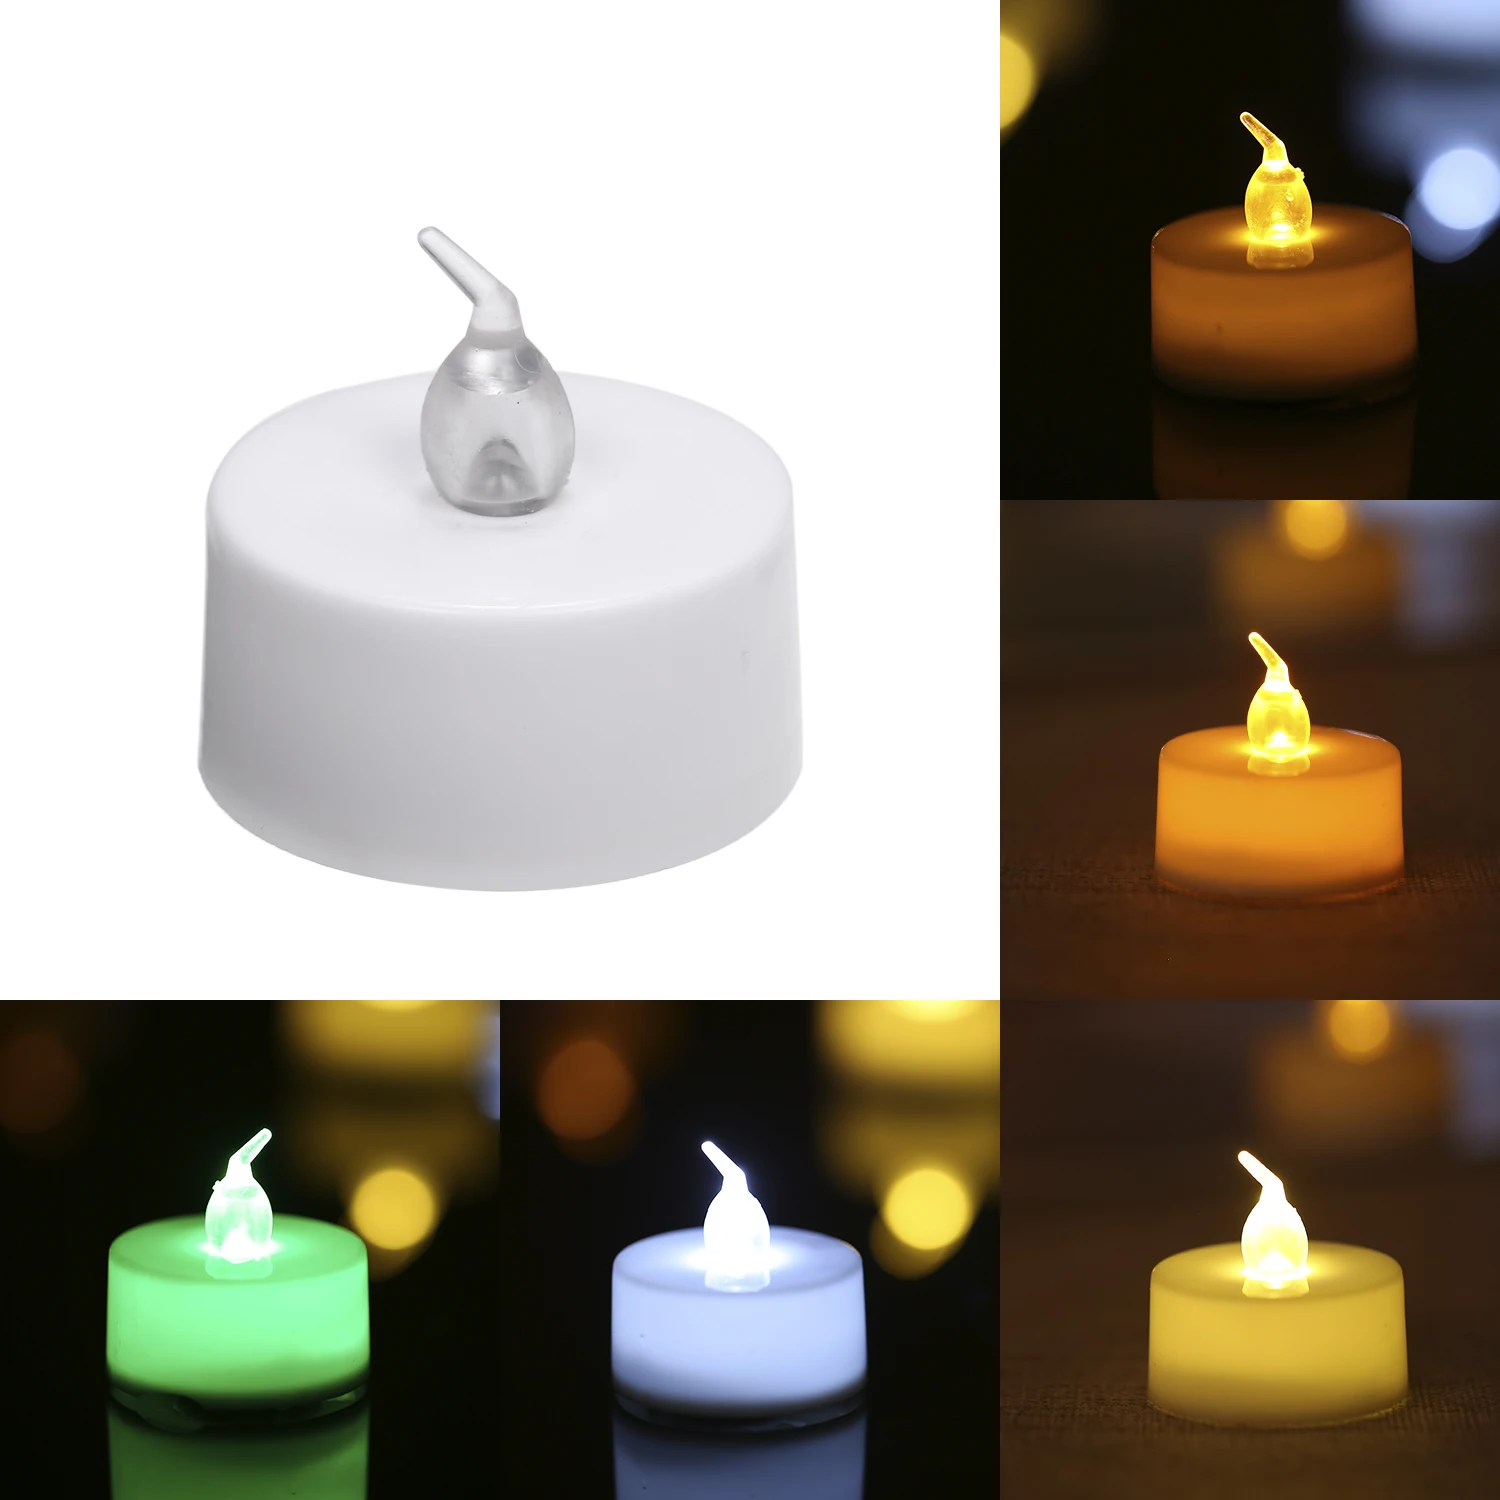 12 шт. светодиодный светильник для свечей, маленький светодиодный светильник с батареей, разноцветная свеча, лампа для моделирования, чайный светильник, украшение для свадьбы, дня рождения, вечеринки